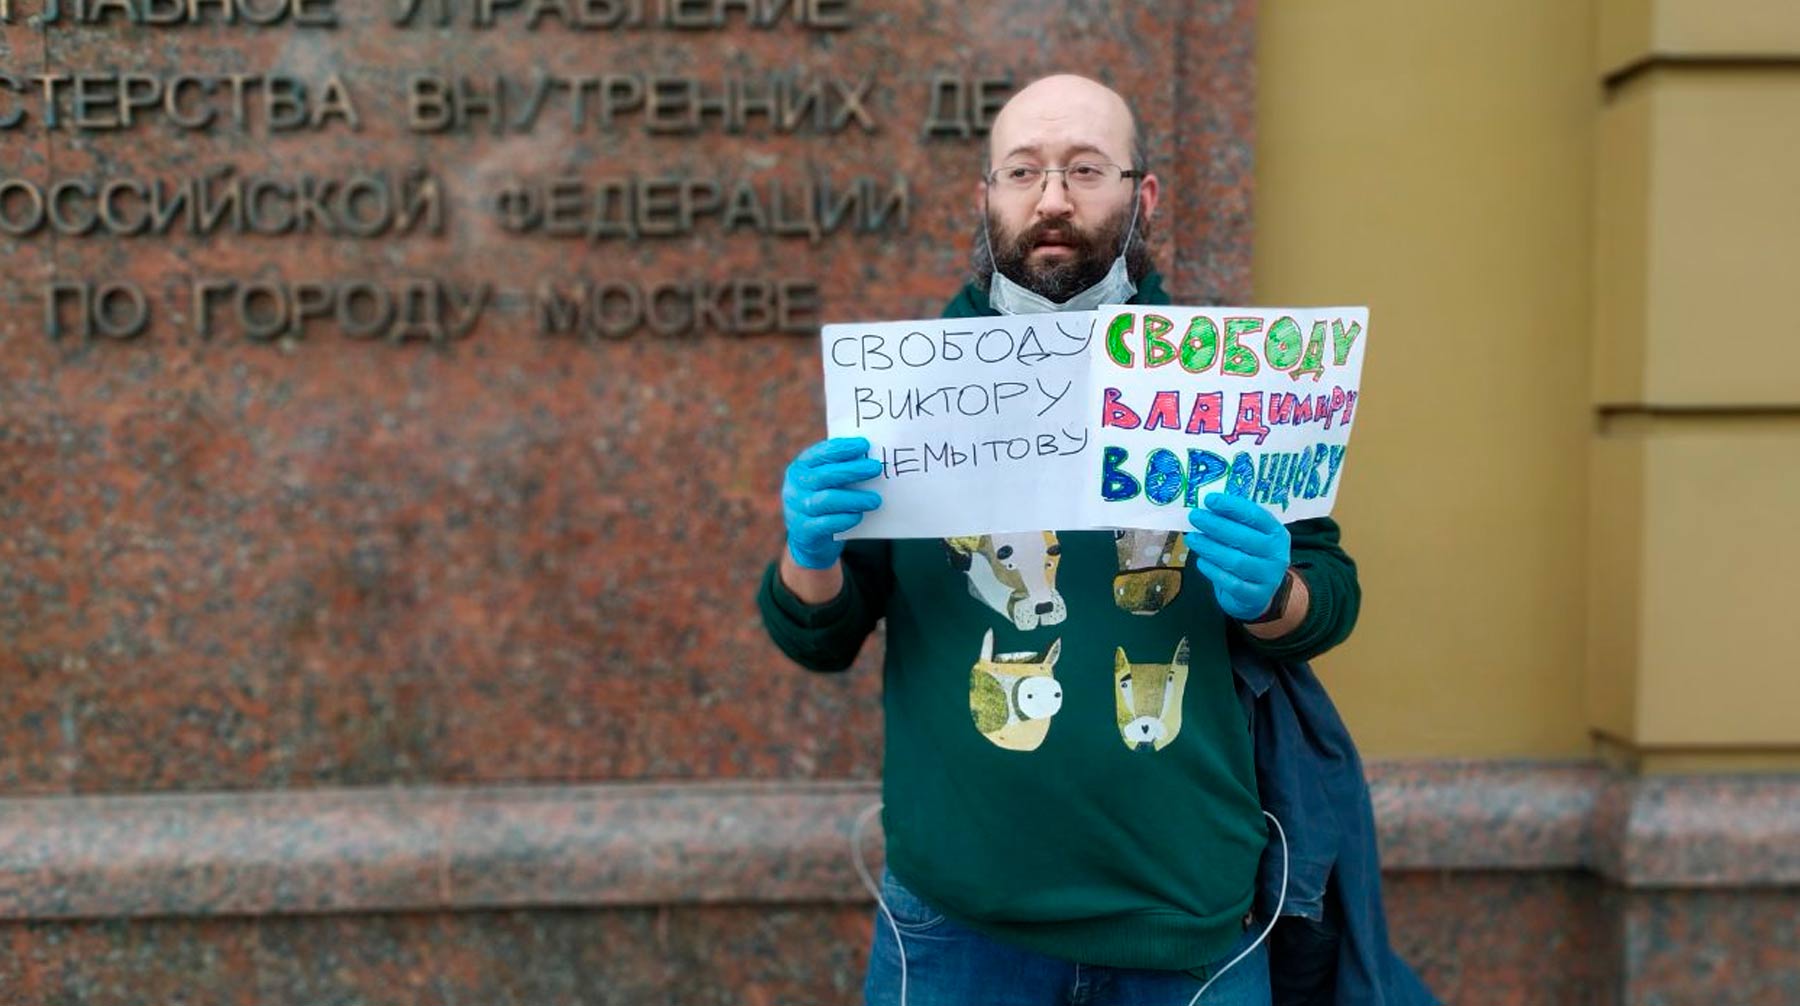 26 мая спецкорреспондента «Новой газеты» задержали и отпустили после составления протокола Фото: © avtozaklive